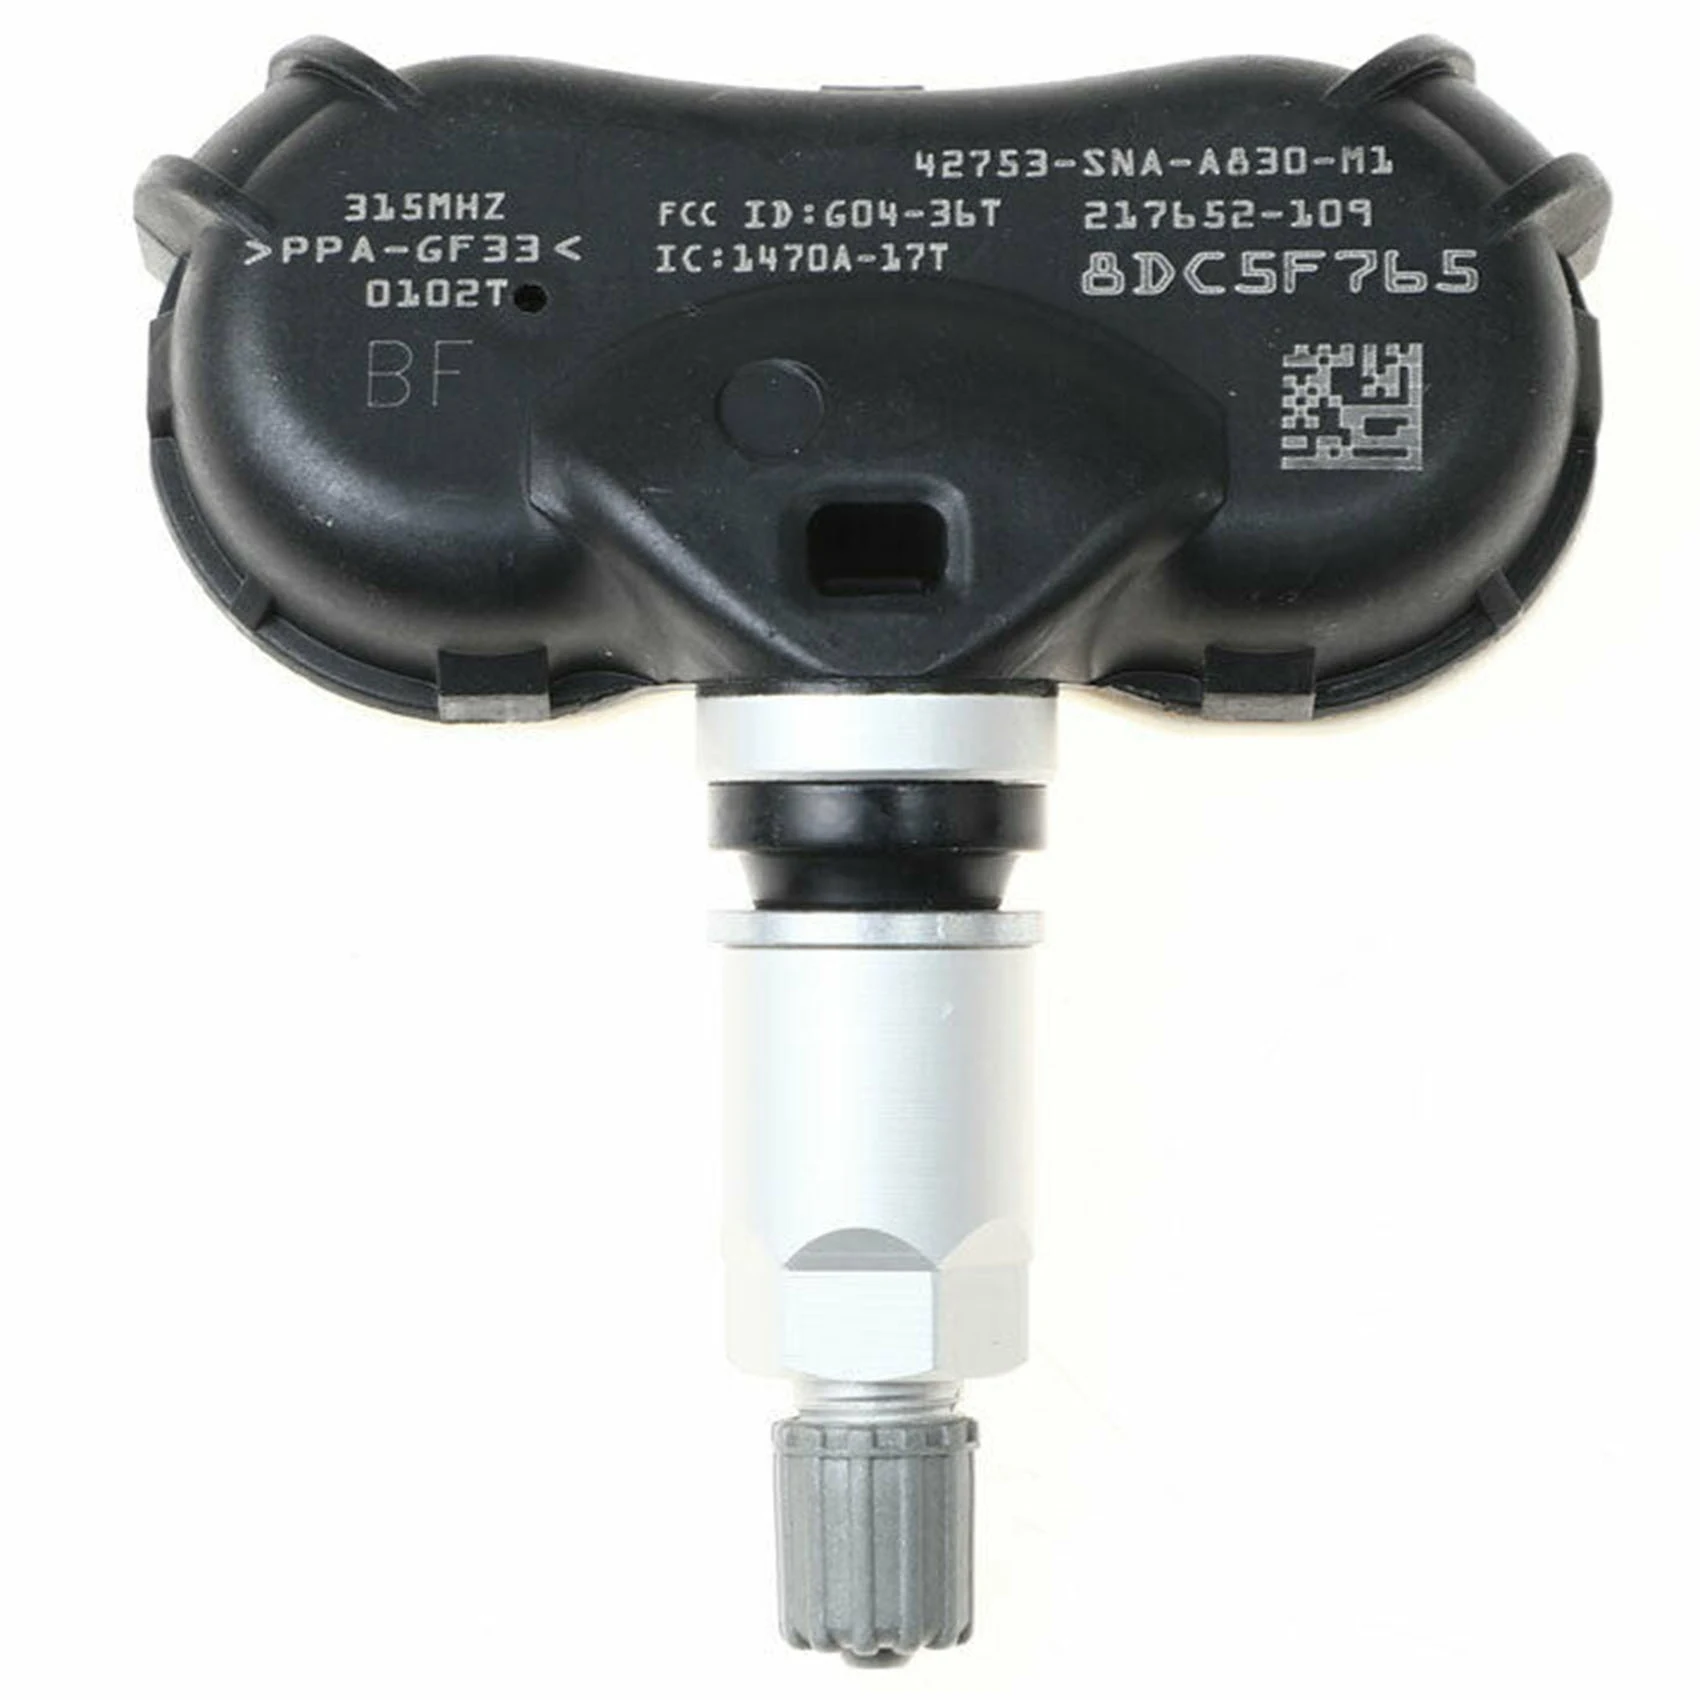 

Датчик давления в шинах 42753-SNA-A83 для Honda Odyssey датчик давления в шинах TPMS датчик давления в шинах